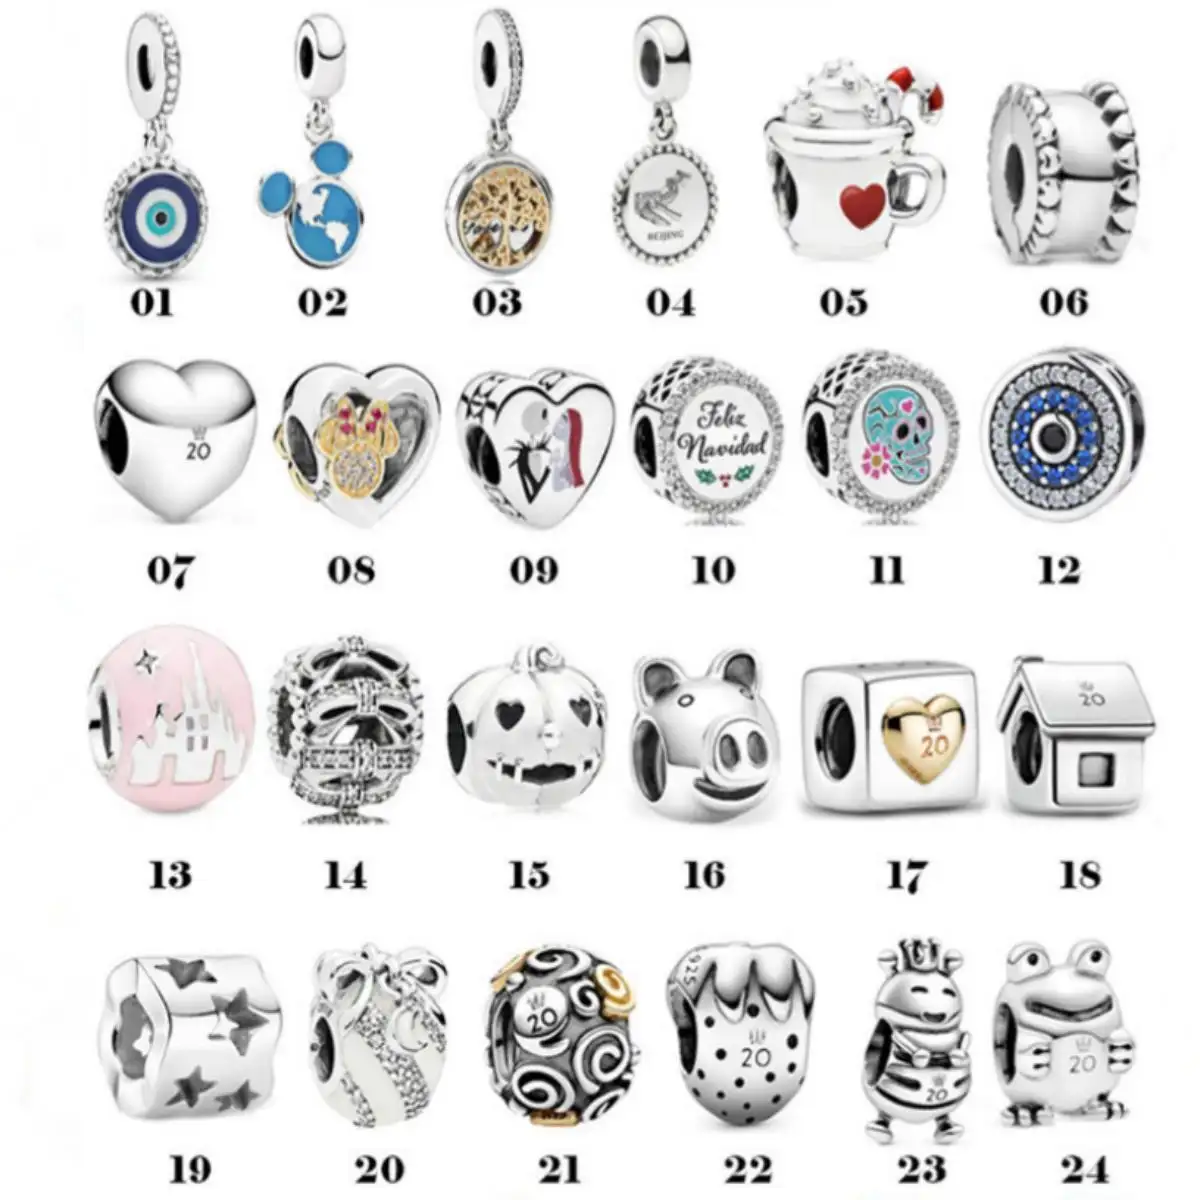 Recém-chegados 925 sterling silver jóias pulseira acessórios DIY contas pingente jóias para as mulheres pulseira charme